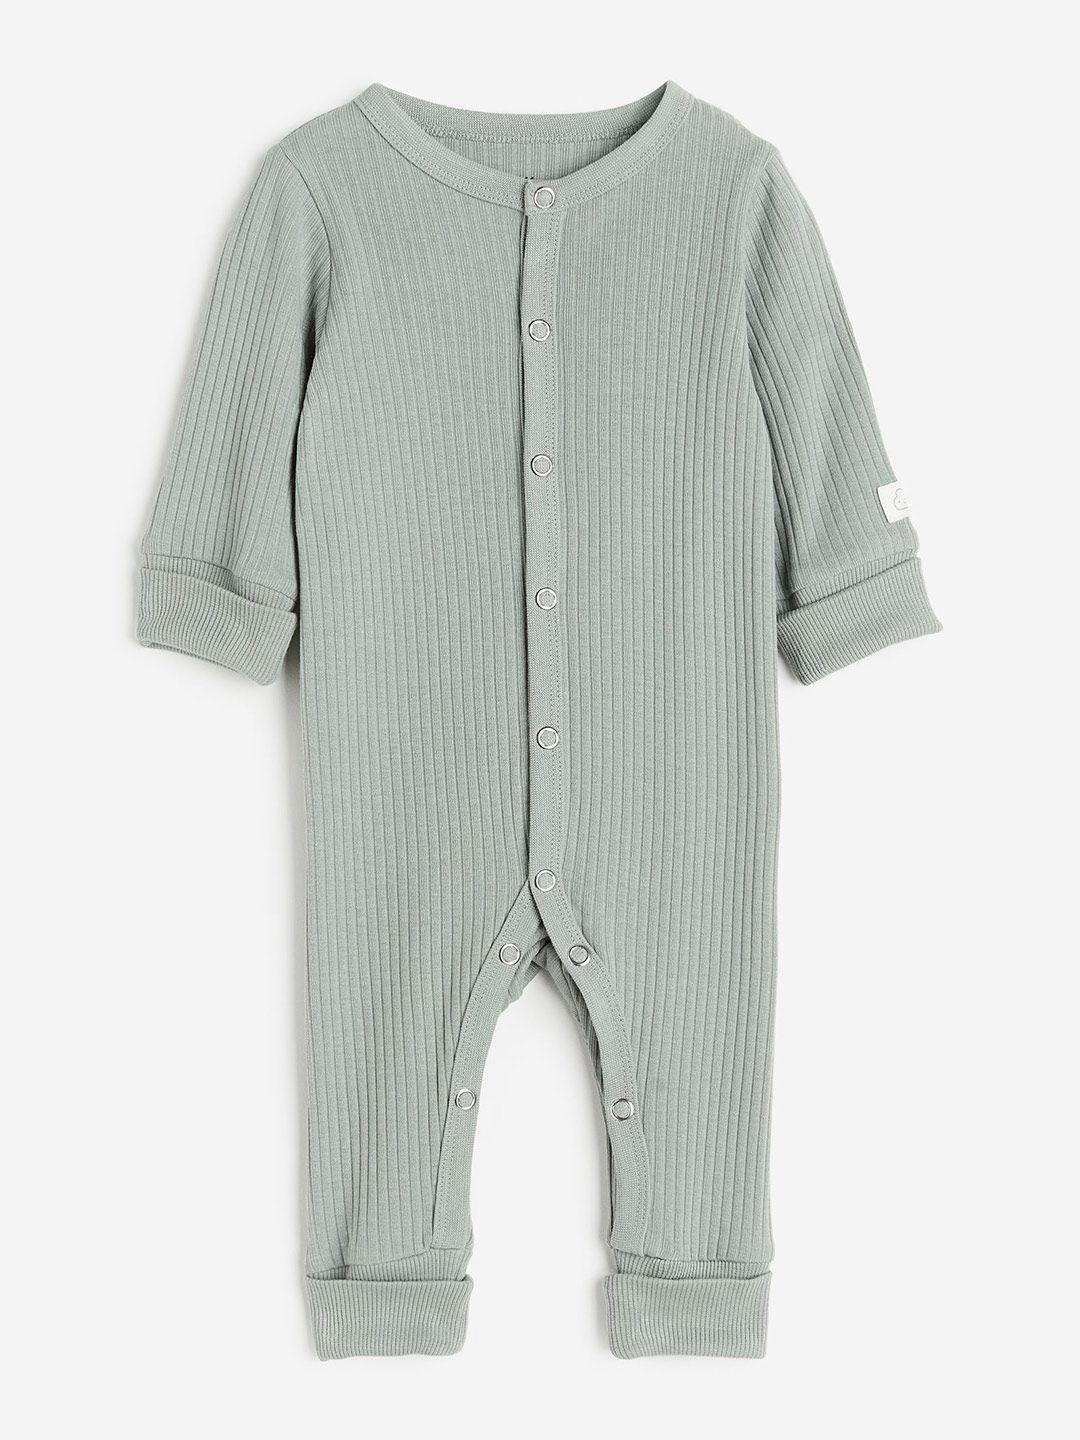 h&m infant boys pure cotton adjustable-fit romper suit